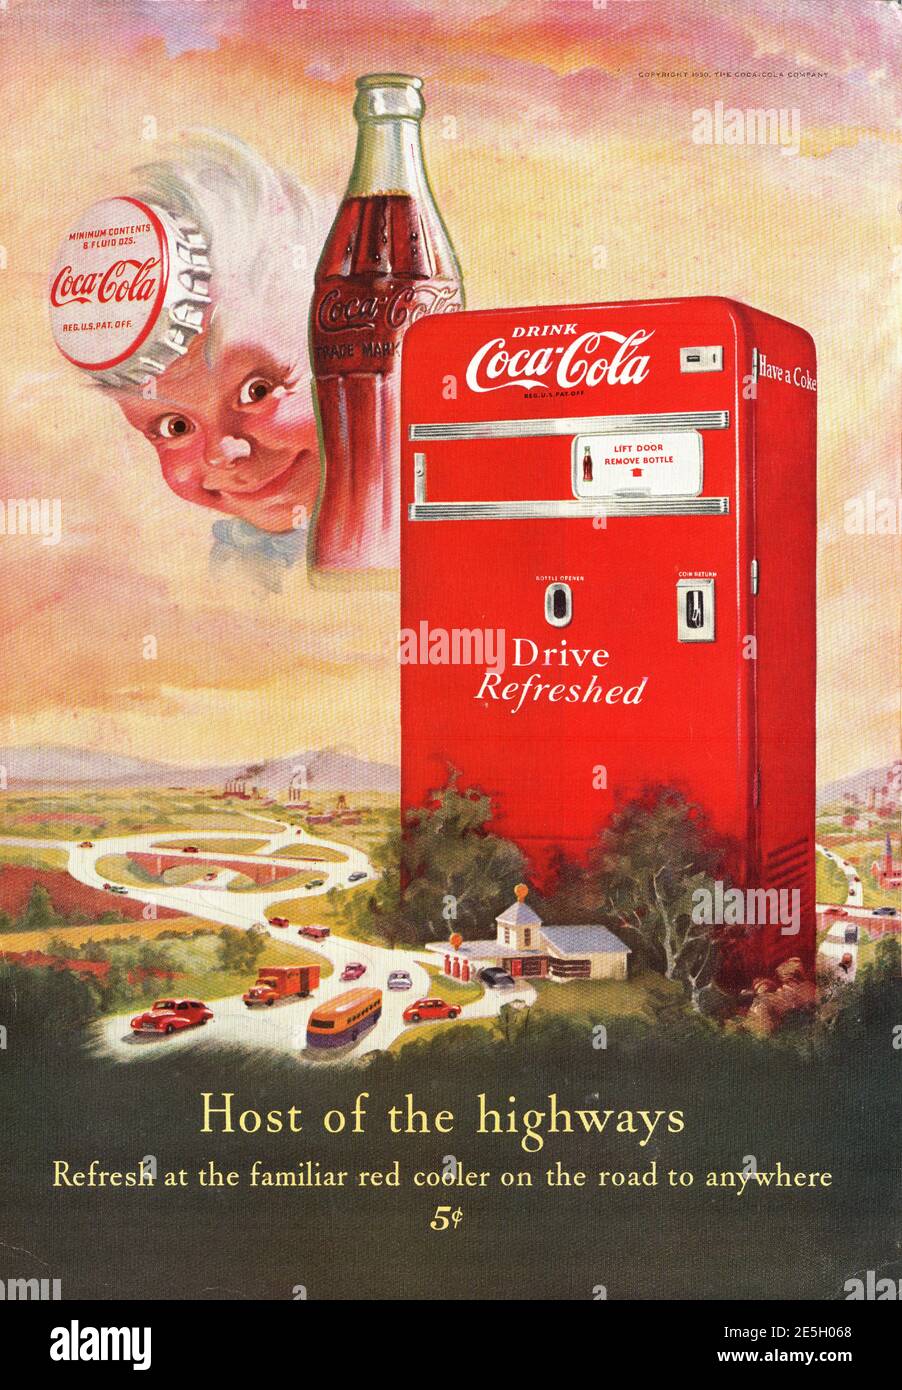 Coke Cola Advert Stockfotos und -bilder Kaufen - Alamy